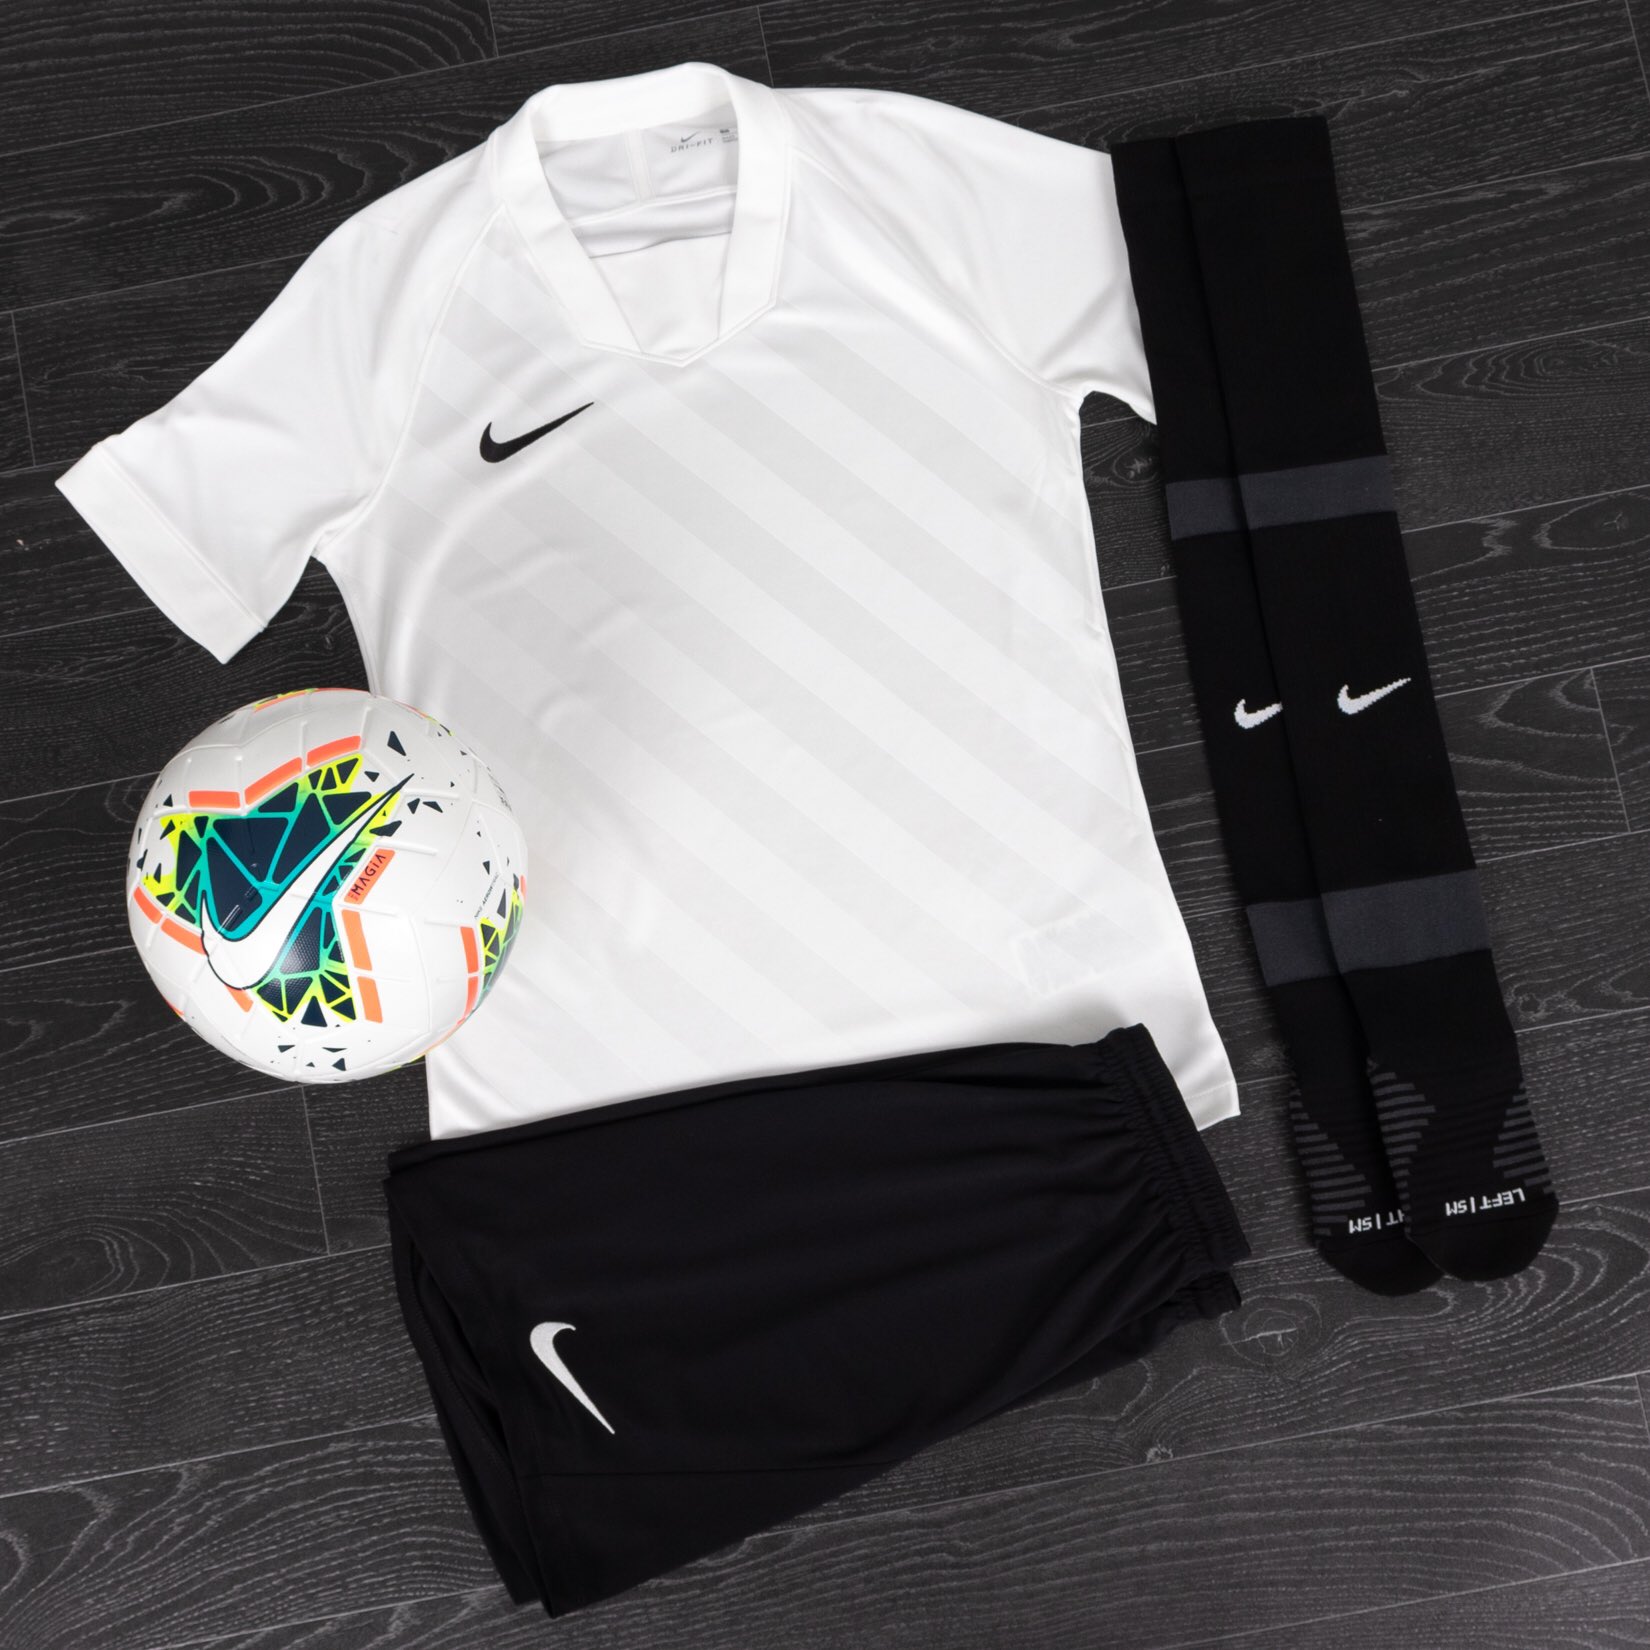 Summer 2020 Match Kit Guide: Nike - Kitlocker.com Blog